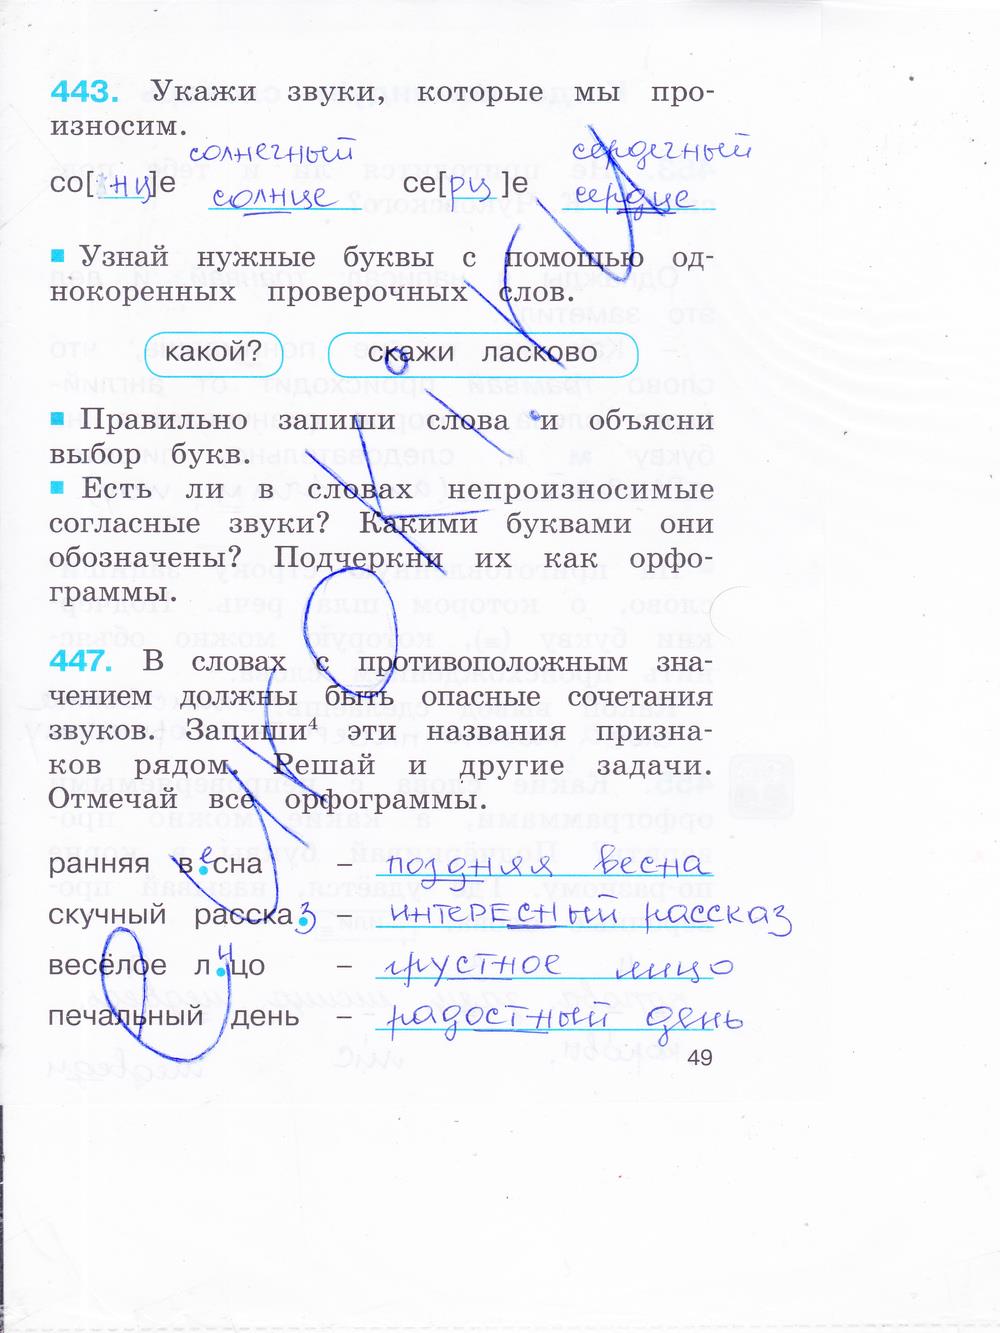 гдз 2 класс рабочая тетрадь часть 2 страница 49 русский язык Соловейчик, Кузьменко